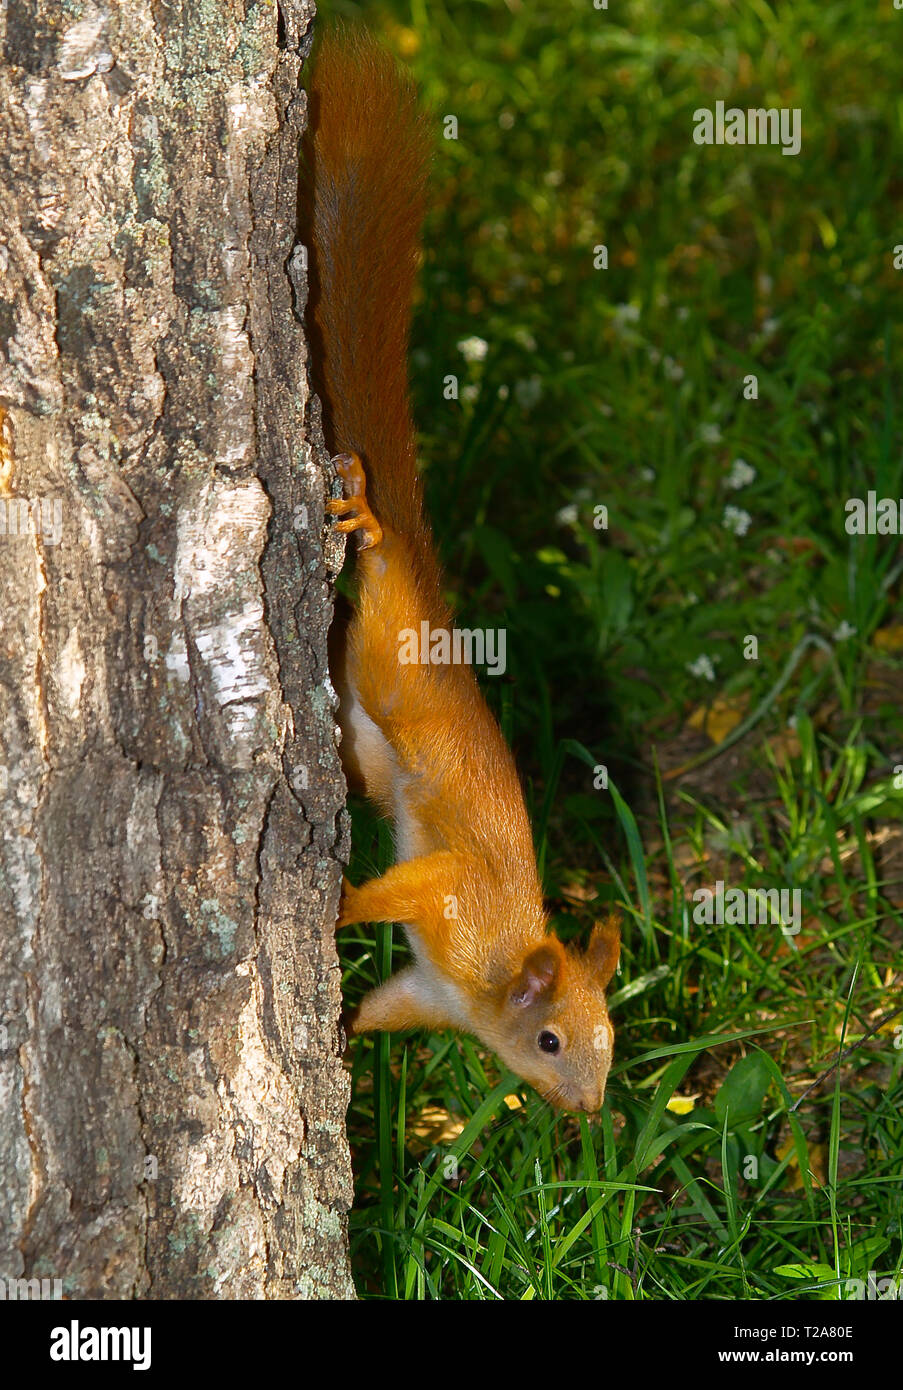 Das Eichhörnchen (Sciurus vulgaris) obyknrvenny (Sciuris) klettert auf einen Baumstamm. Europa. In der Ukraine. Charkow. isst auf einer Tanne Zweig. Kosten le nicht beeinträchtigen. Stockfoto